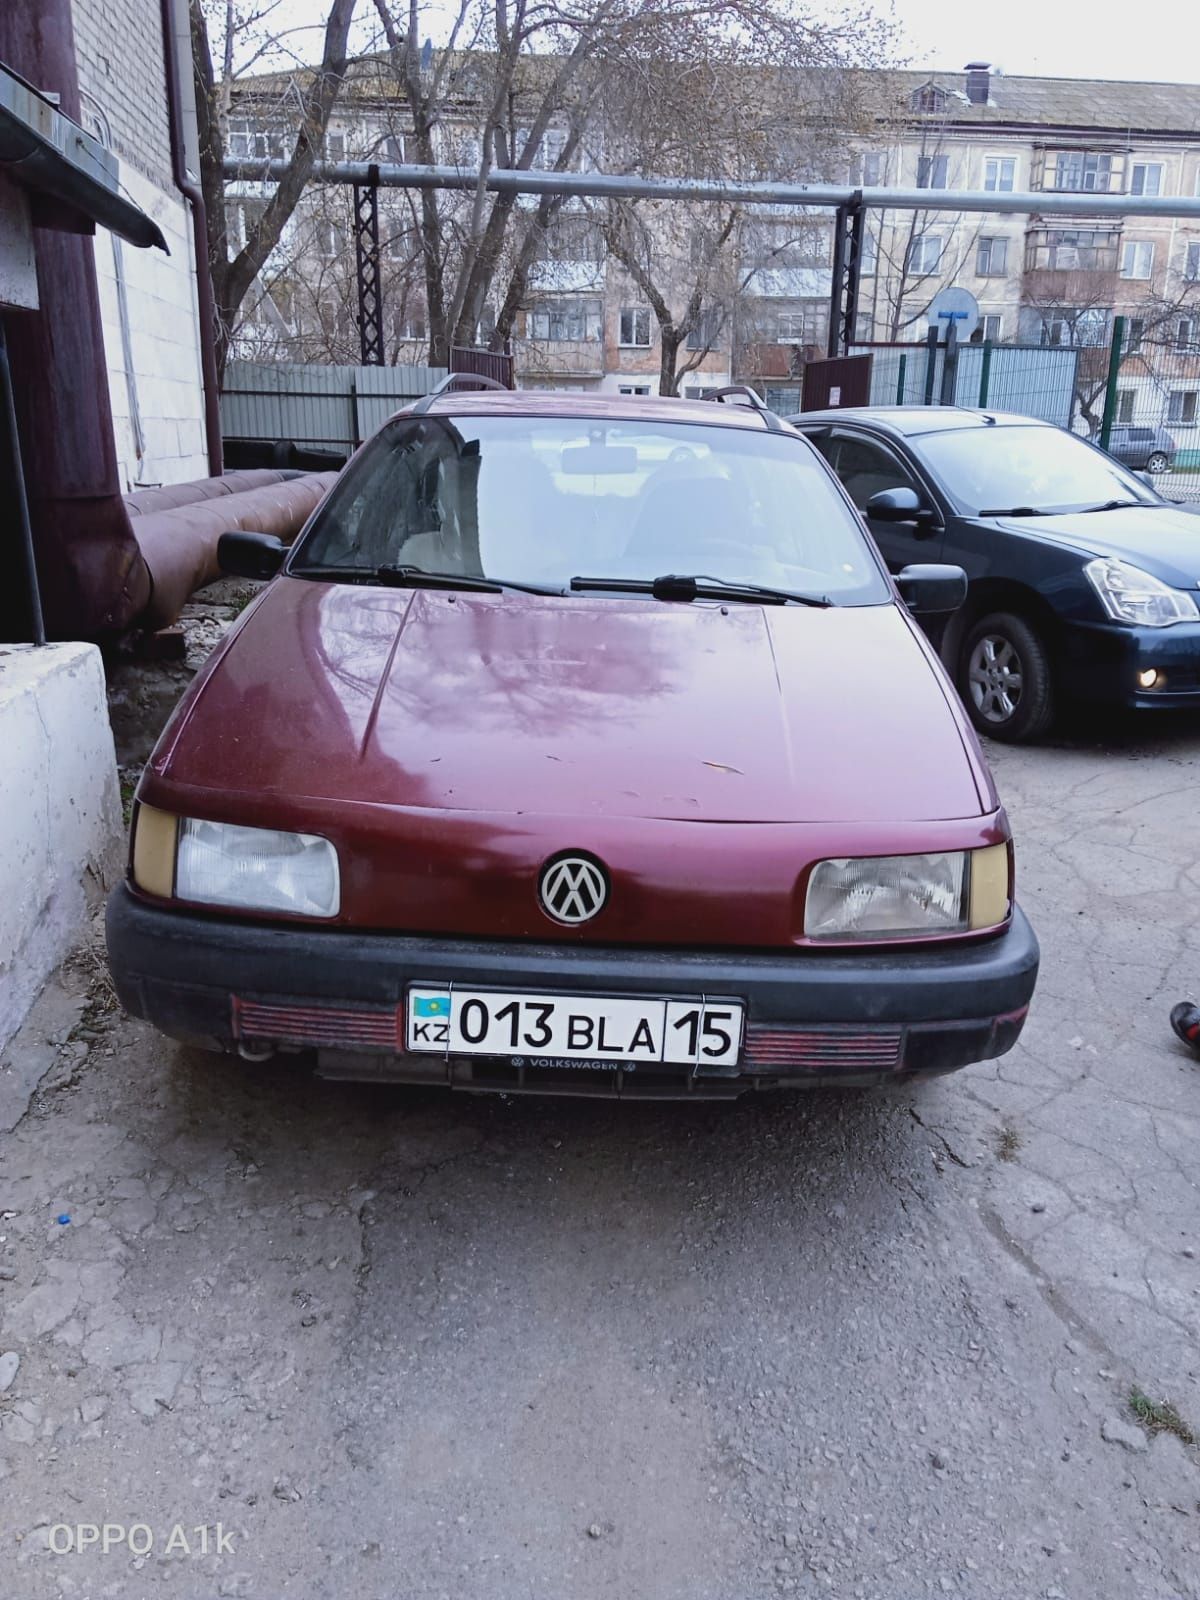 Продам автомобиль Volkswagen Passat b3 универсал. на полном ходу.